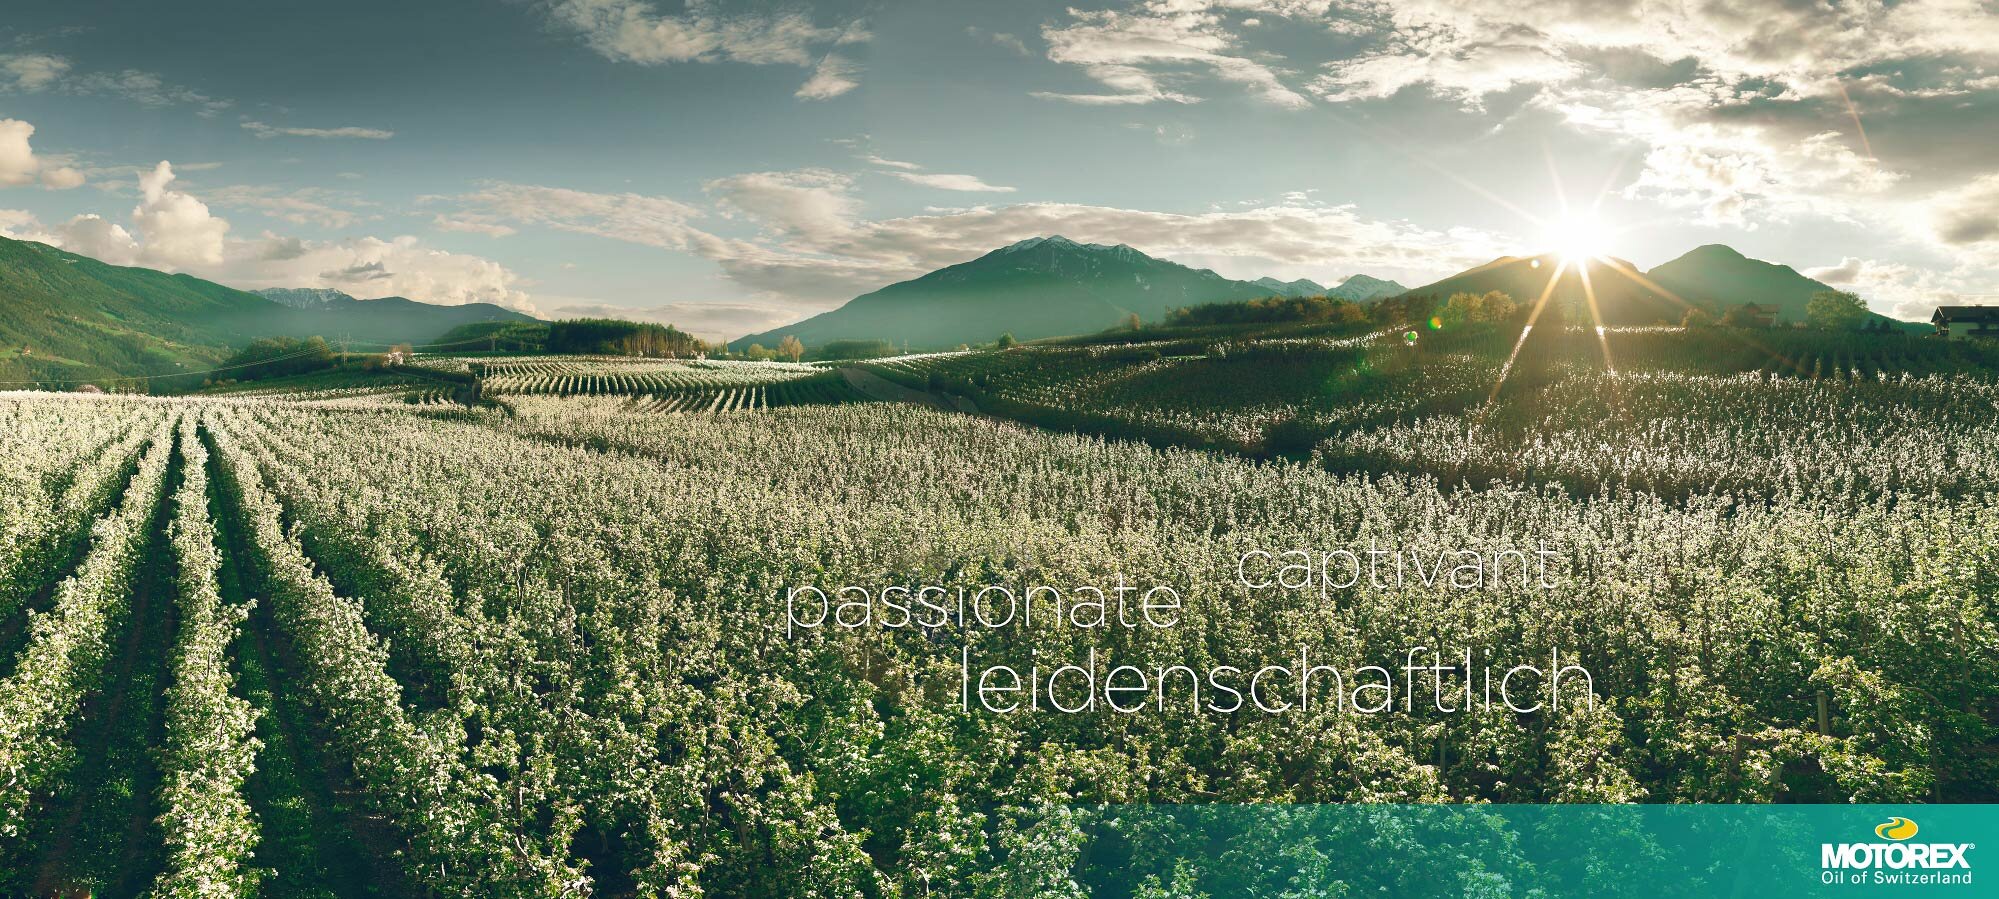 Michel_Jaussi_Photography_Schweiz_Landschaften_MOTOREX_Landscapes-5.jpg